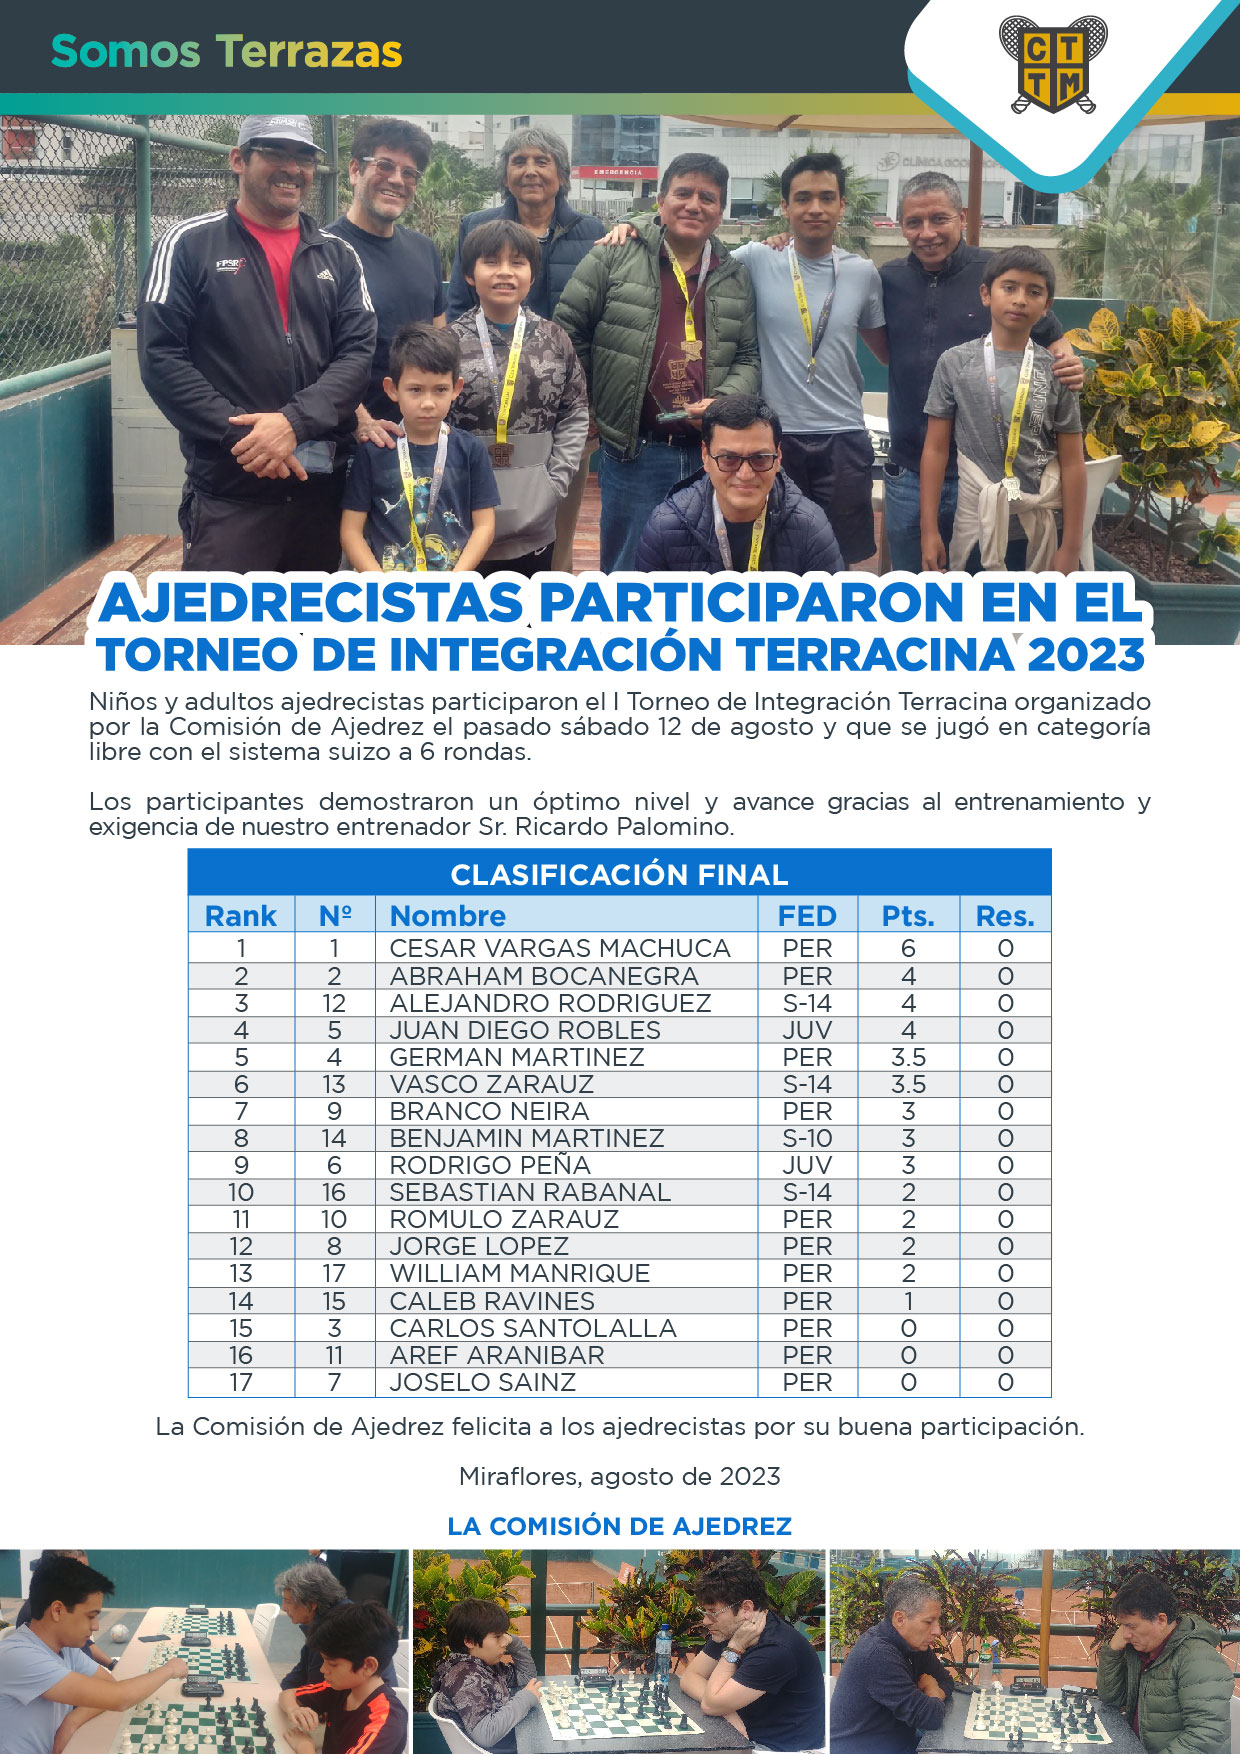 AJEDRECISTAS PARTICIPARON EN EL TORNEO DE INTEGRACIÓN TERRACINA 2023